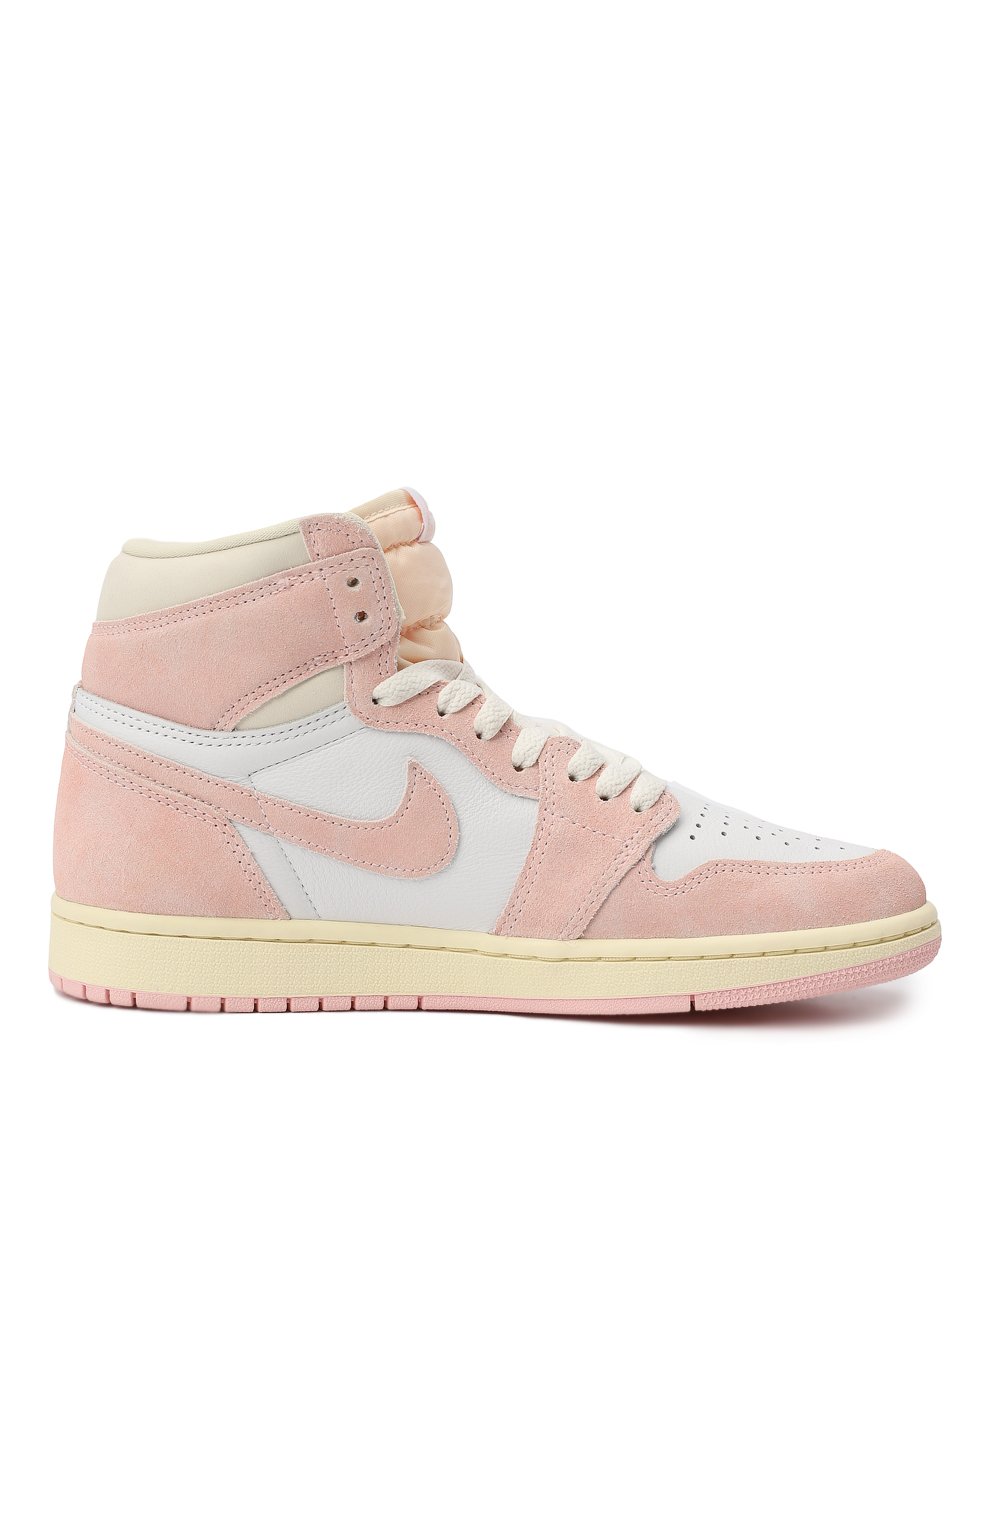 Кеды Air Jordan 1 Retro High OG "Washed Pink" | Nike | Розовый - 7